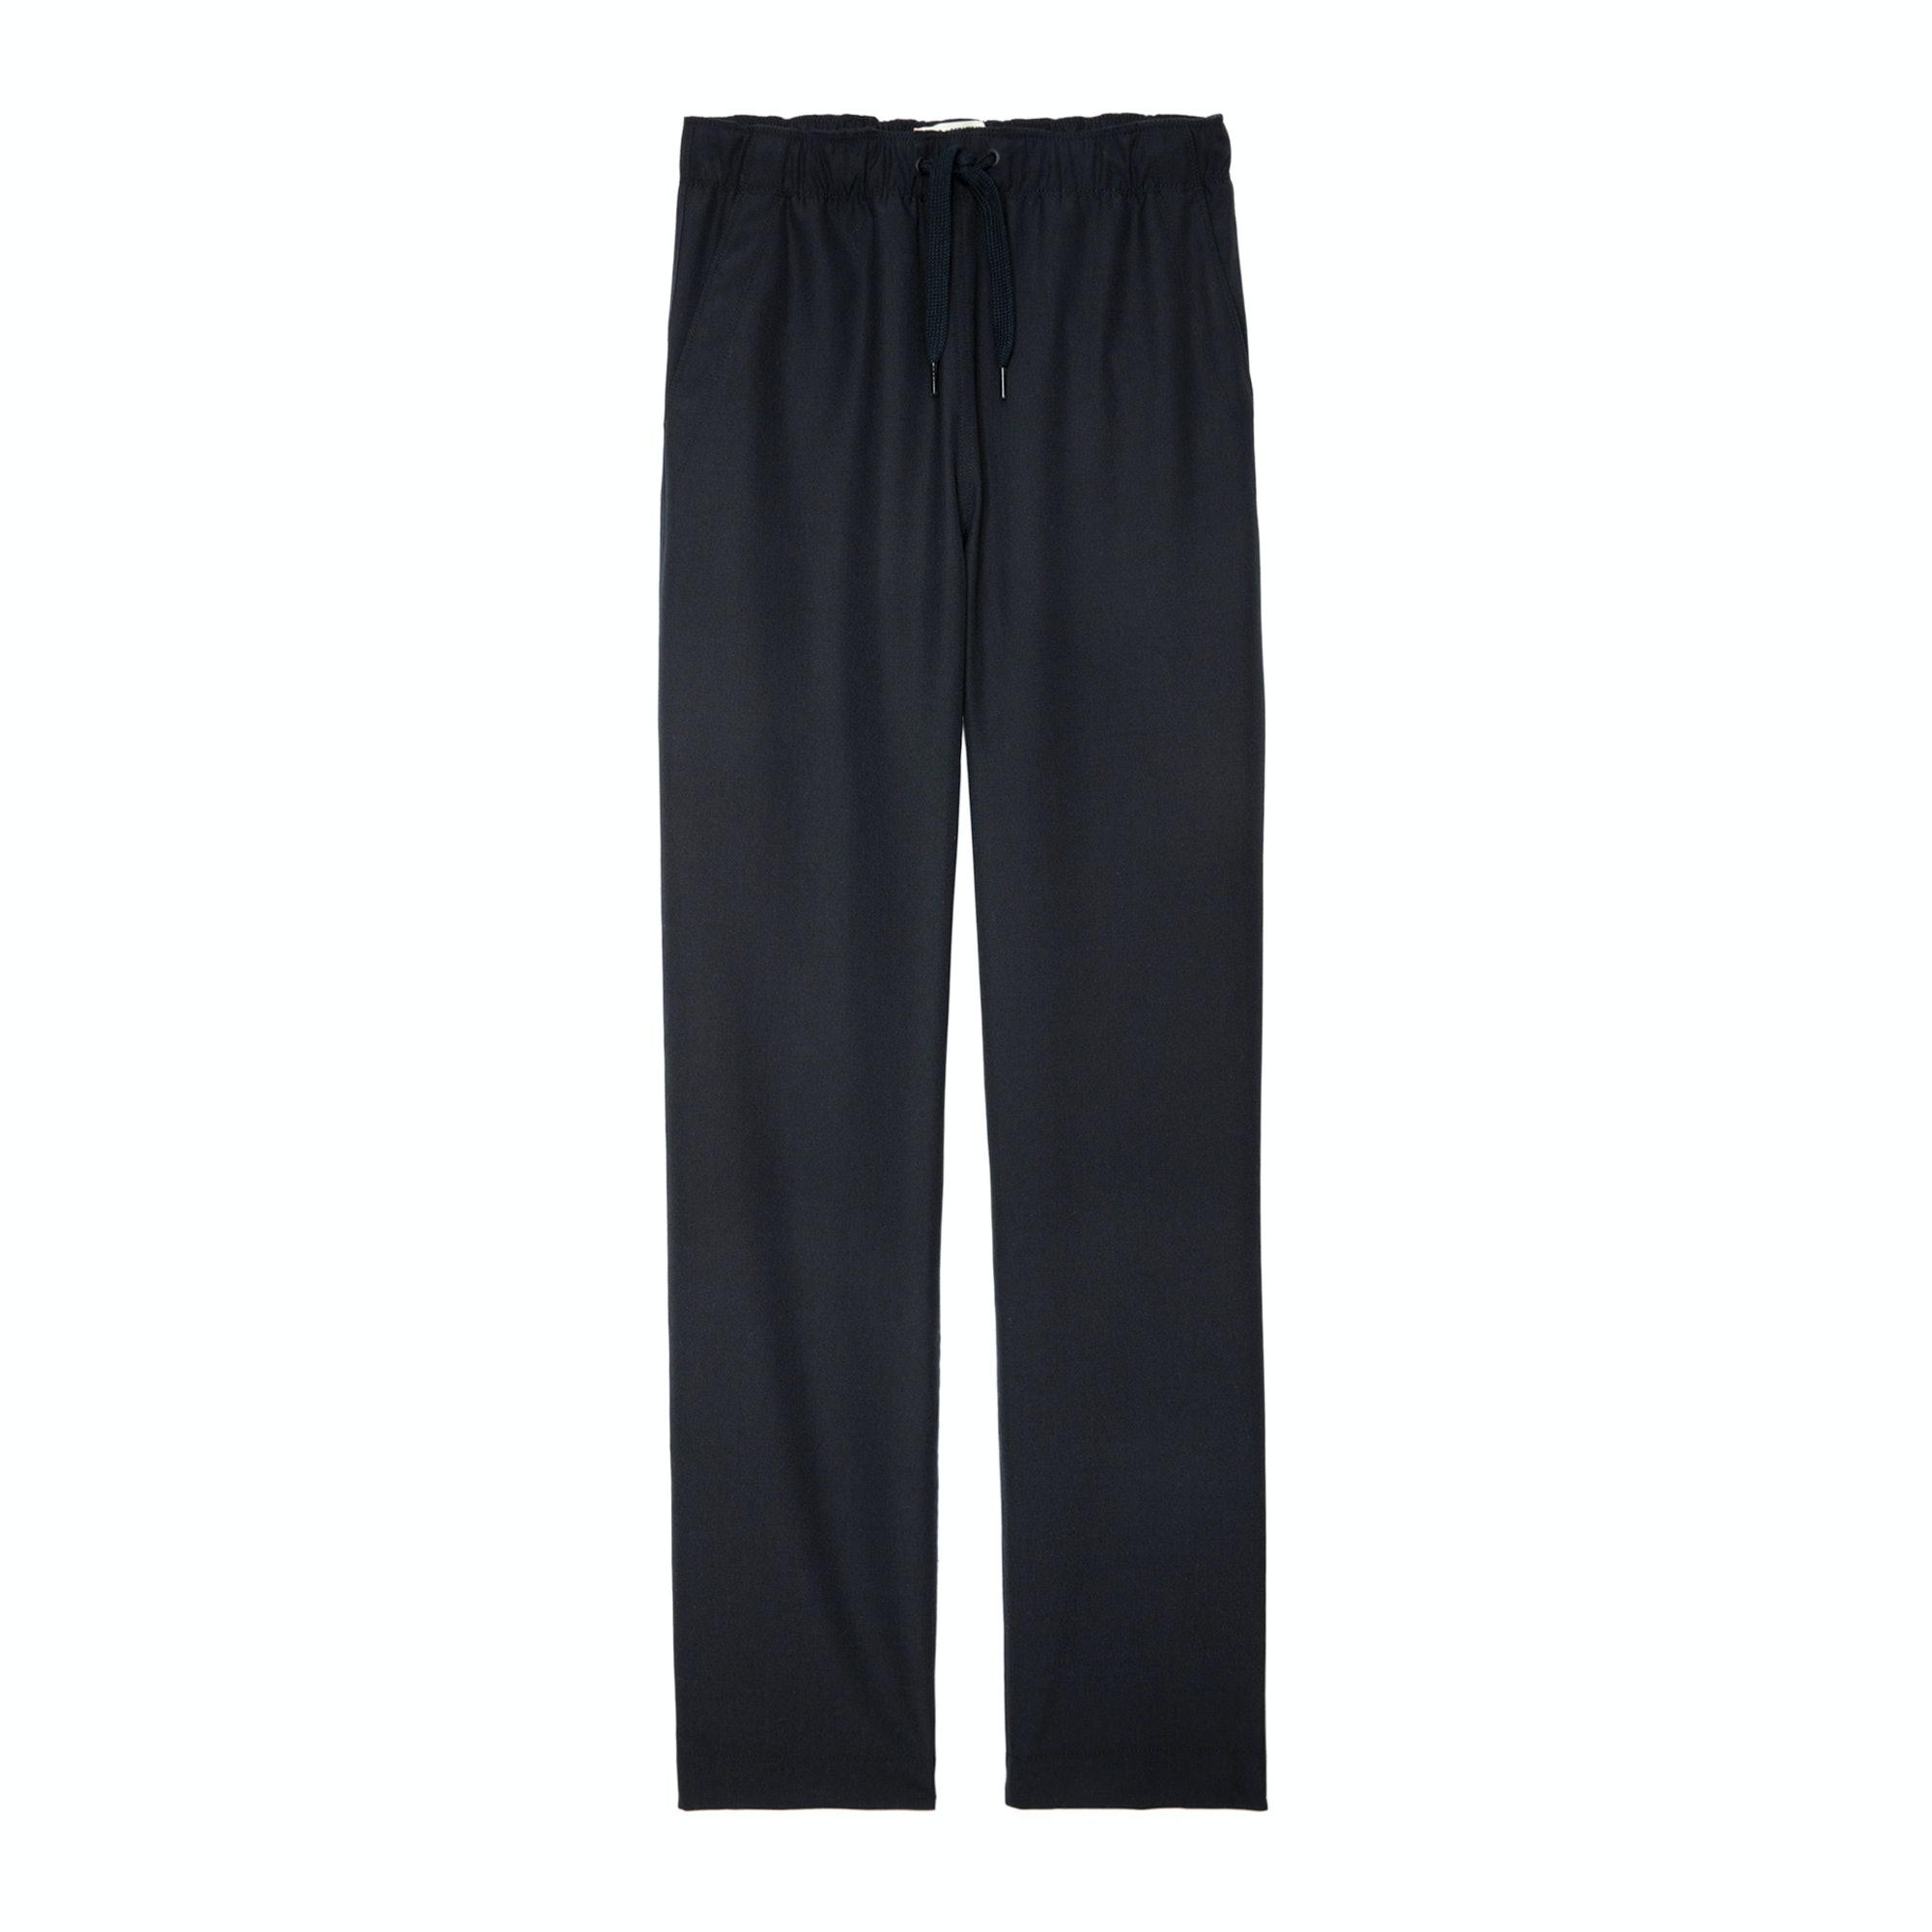 Pantalon Pixel Noir - Taille 38 - Homme